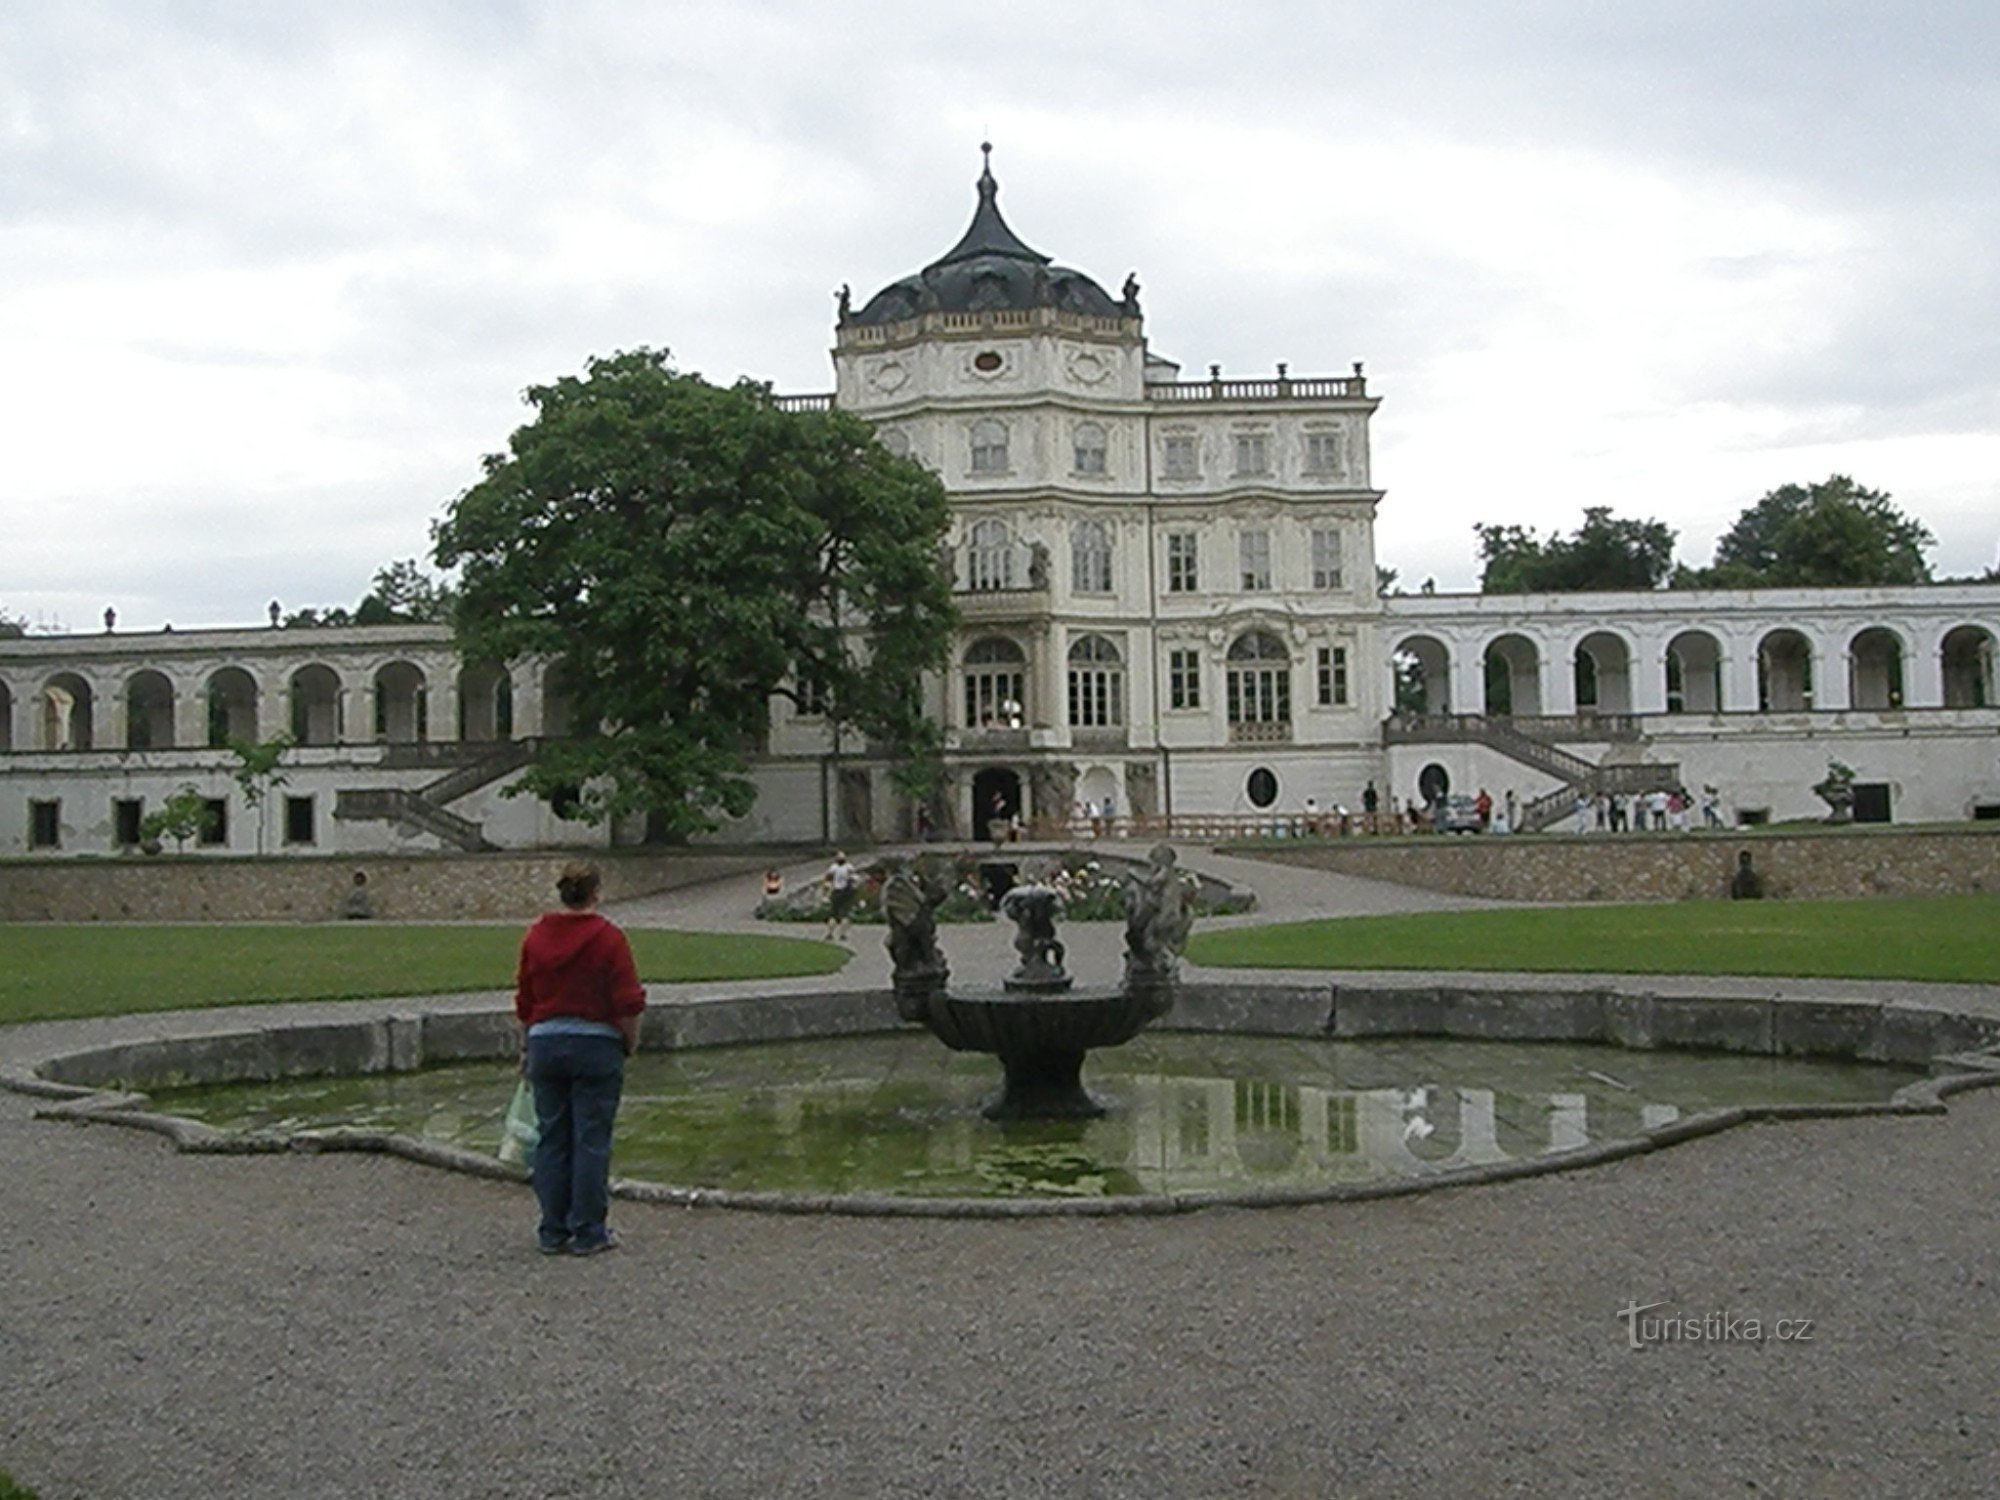 Het plaatselijke barokke kasteel met zijn poelen en vijver doet misschien een beetje denken aan een klein Versailles